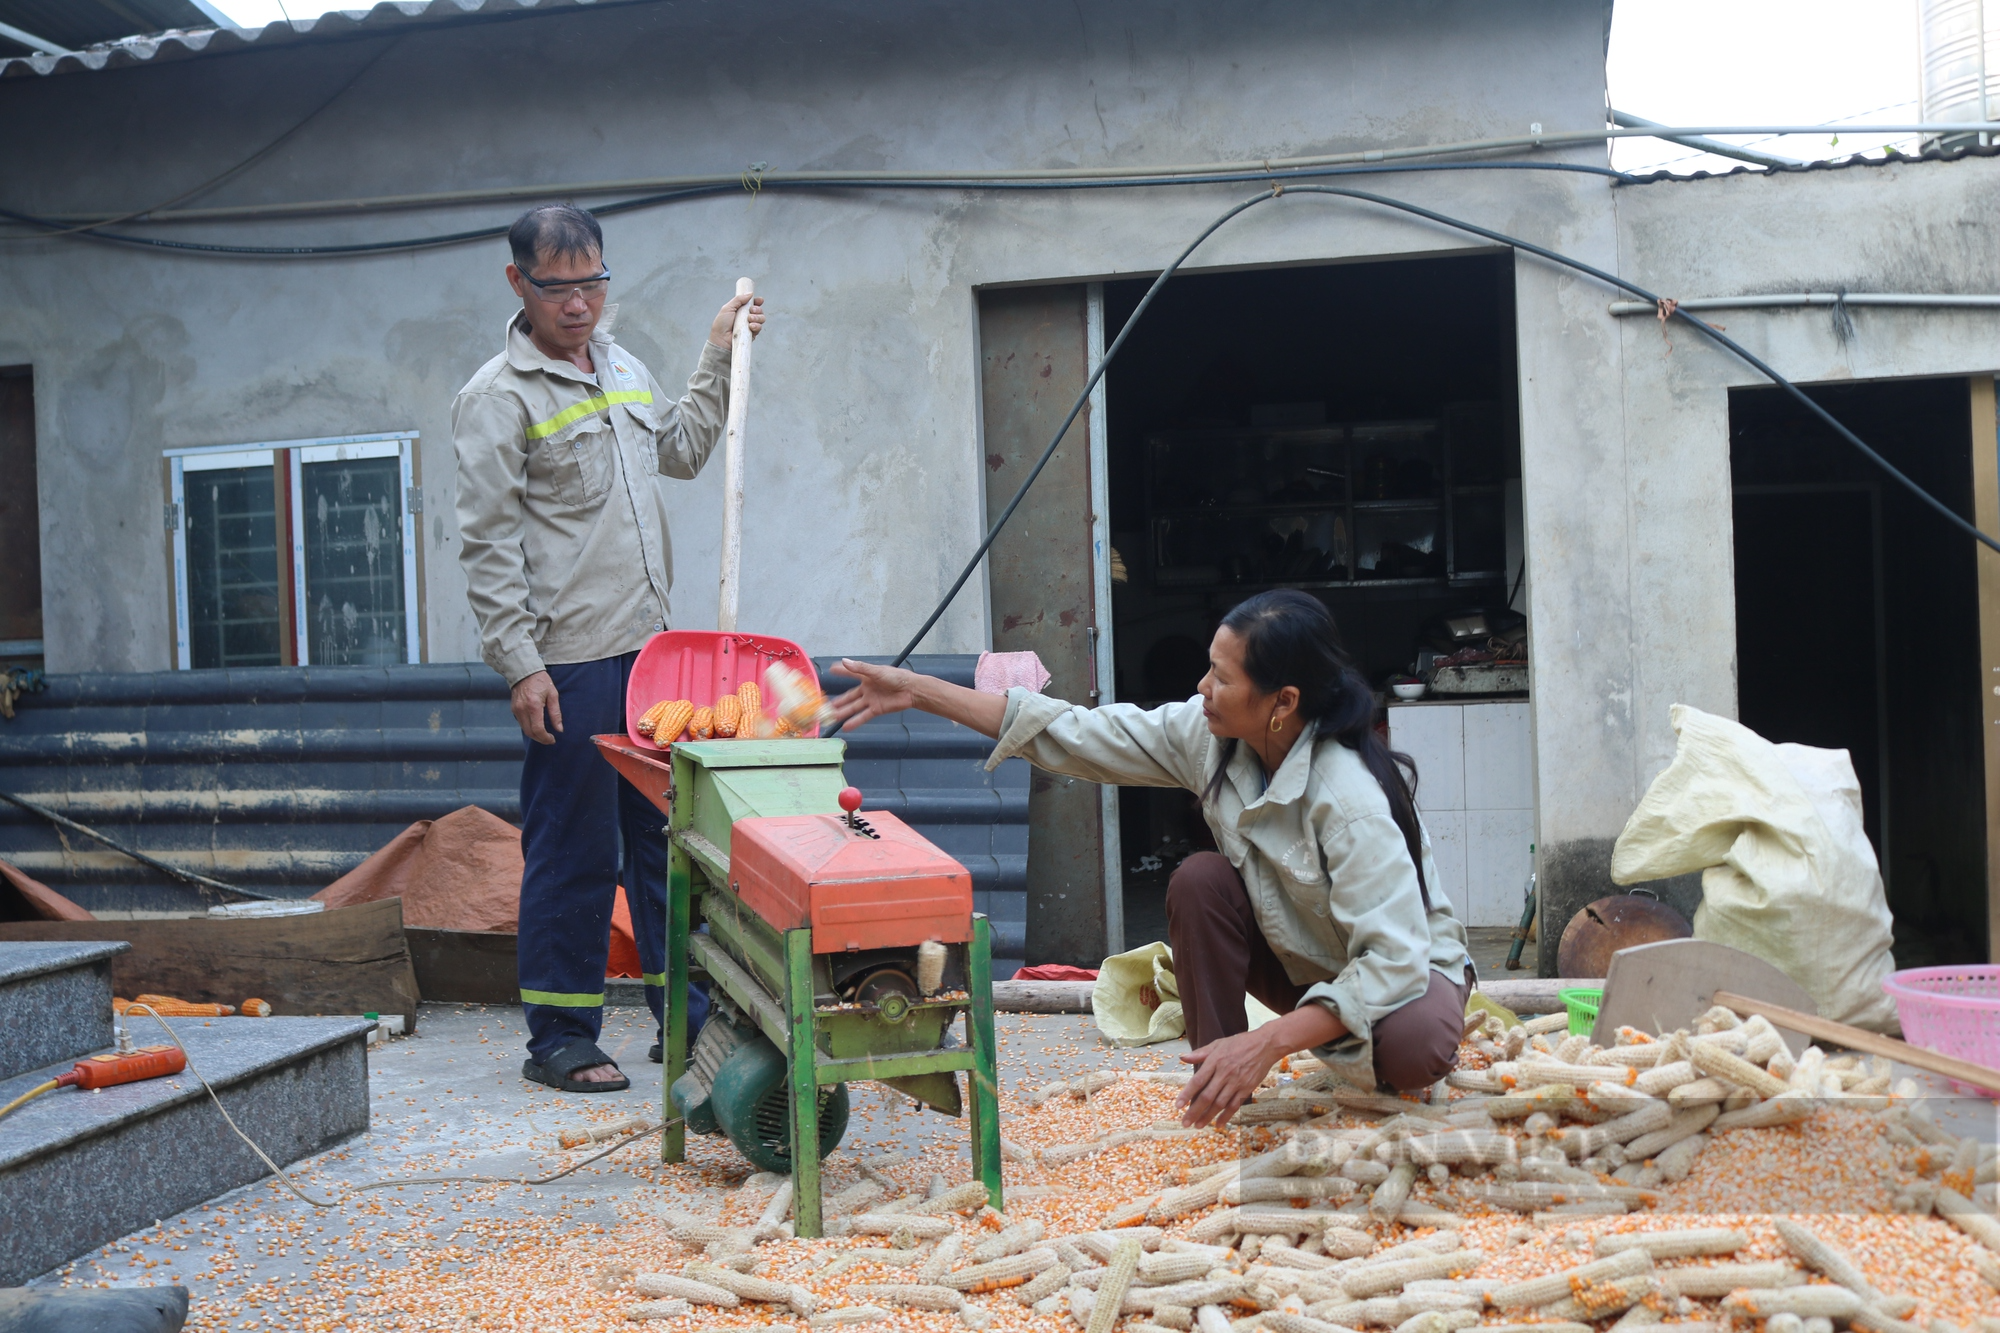 Huyện biên giới Bát Xát của Lào Cai vẫn còn gần 500 hộ gia đình đang thiếu hụt thông tin - Ảnh 6.